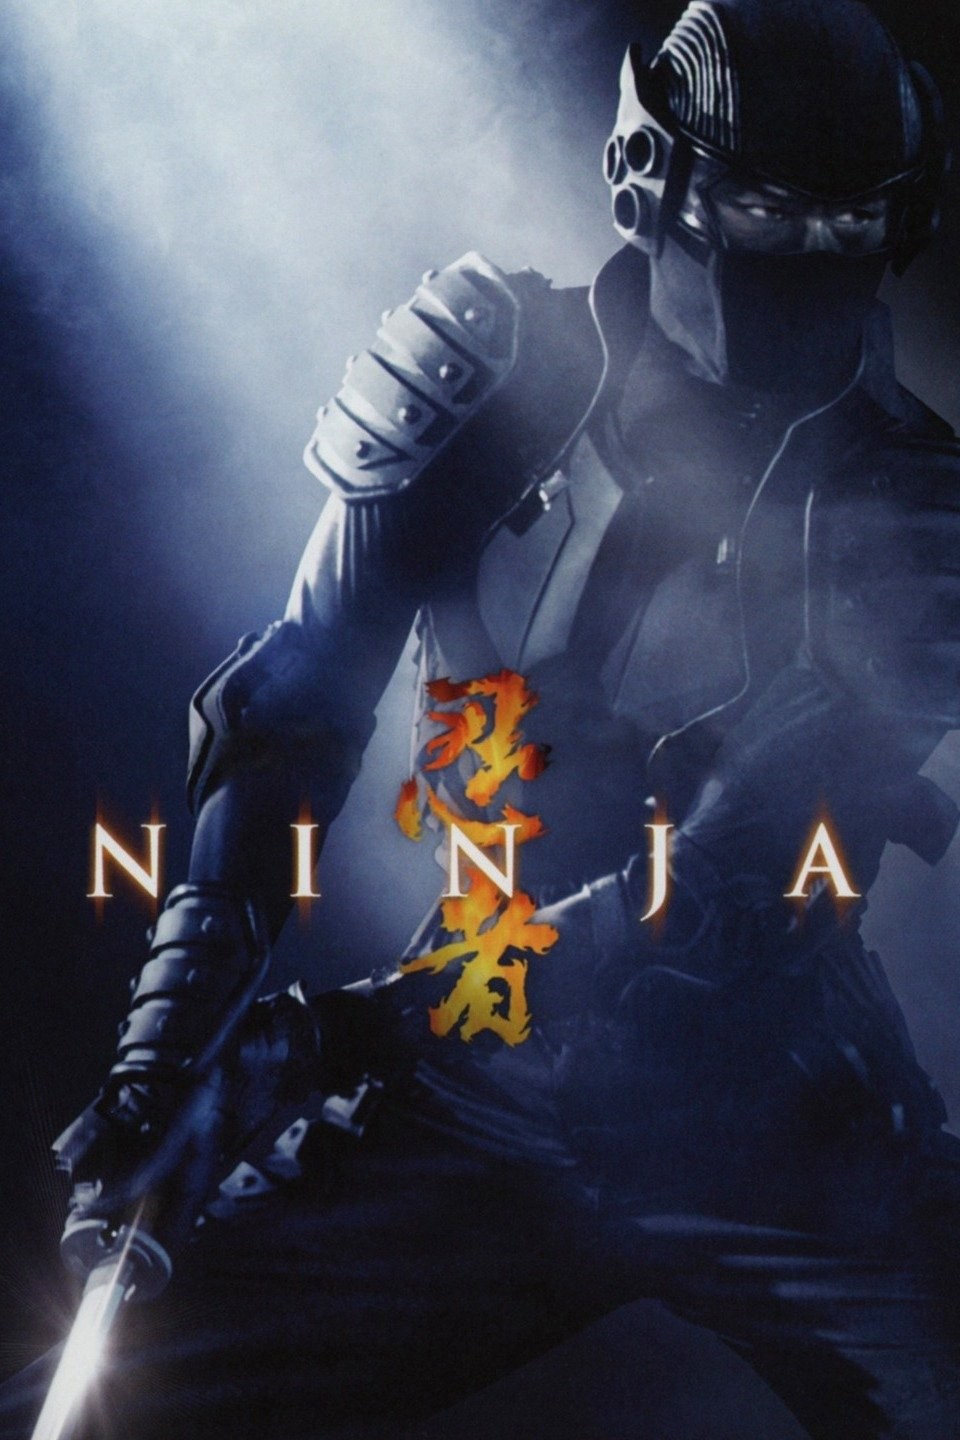 Night of the Ninja - Rotten Tomatoes